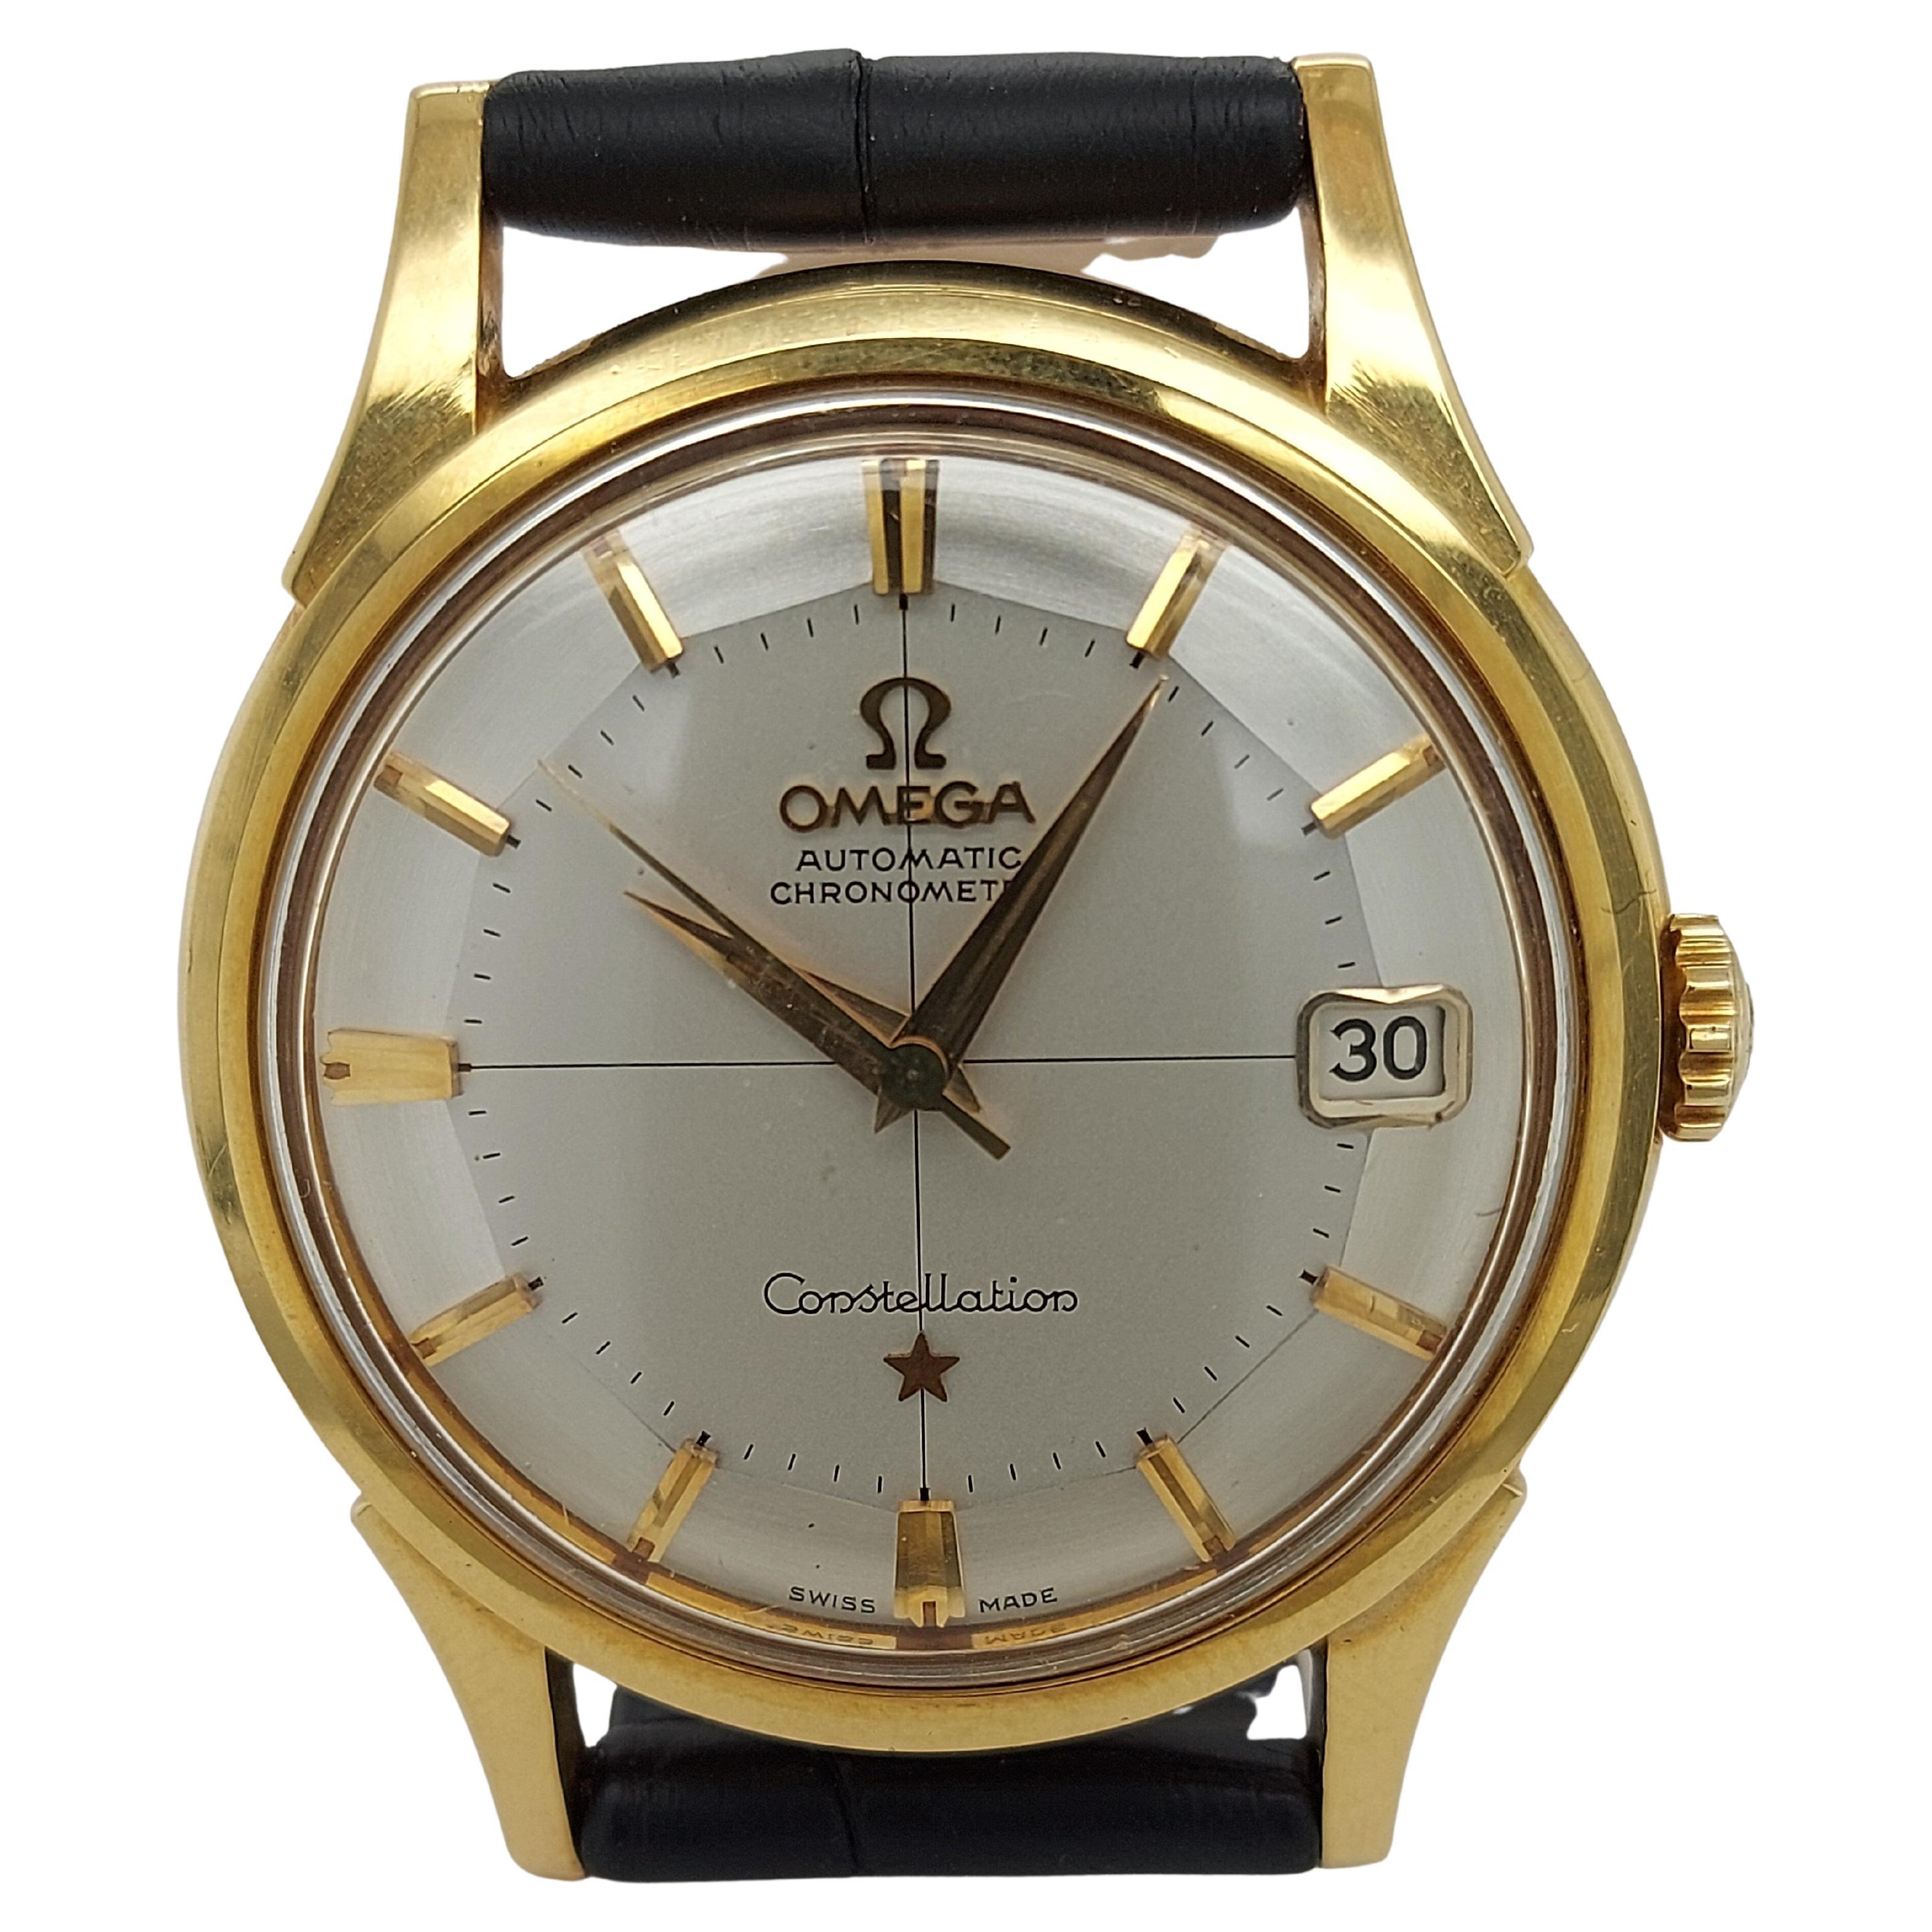 Omega Constellation Chronometer - 5 For Sale on 1stDibs | omega 